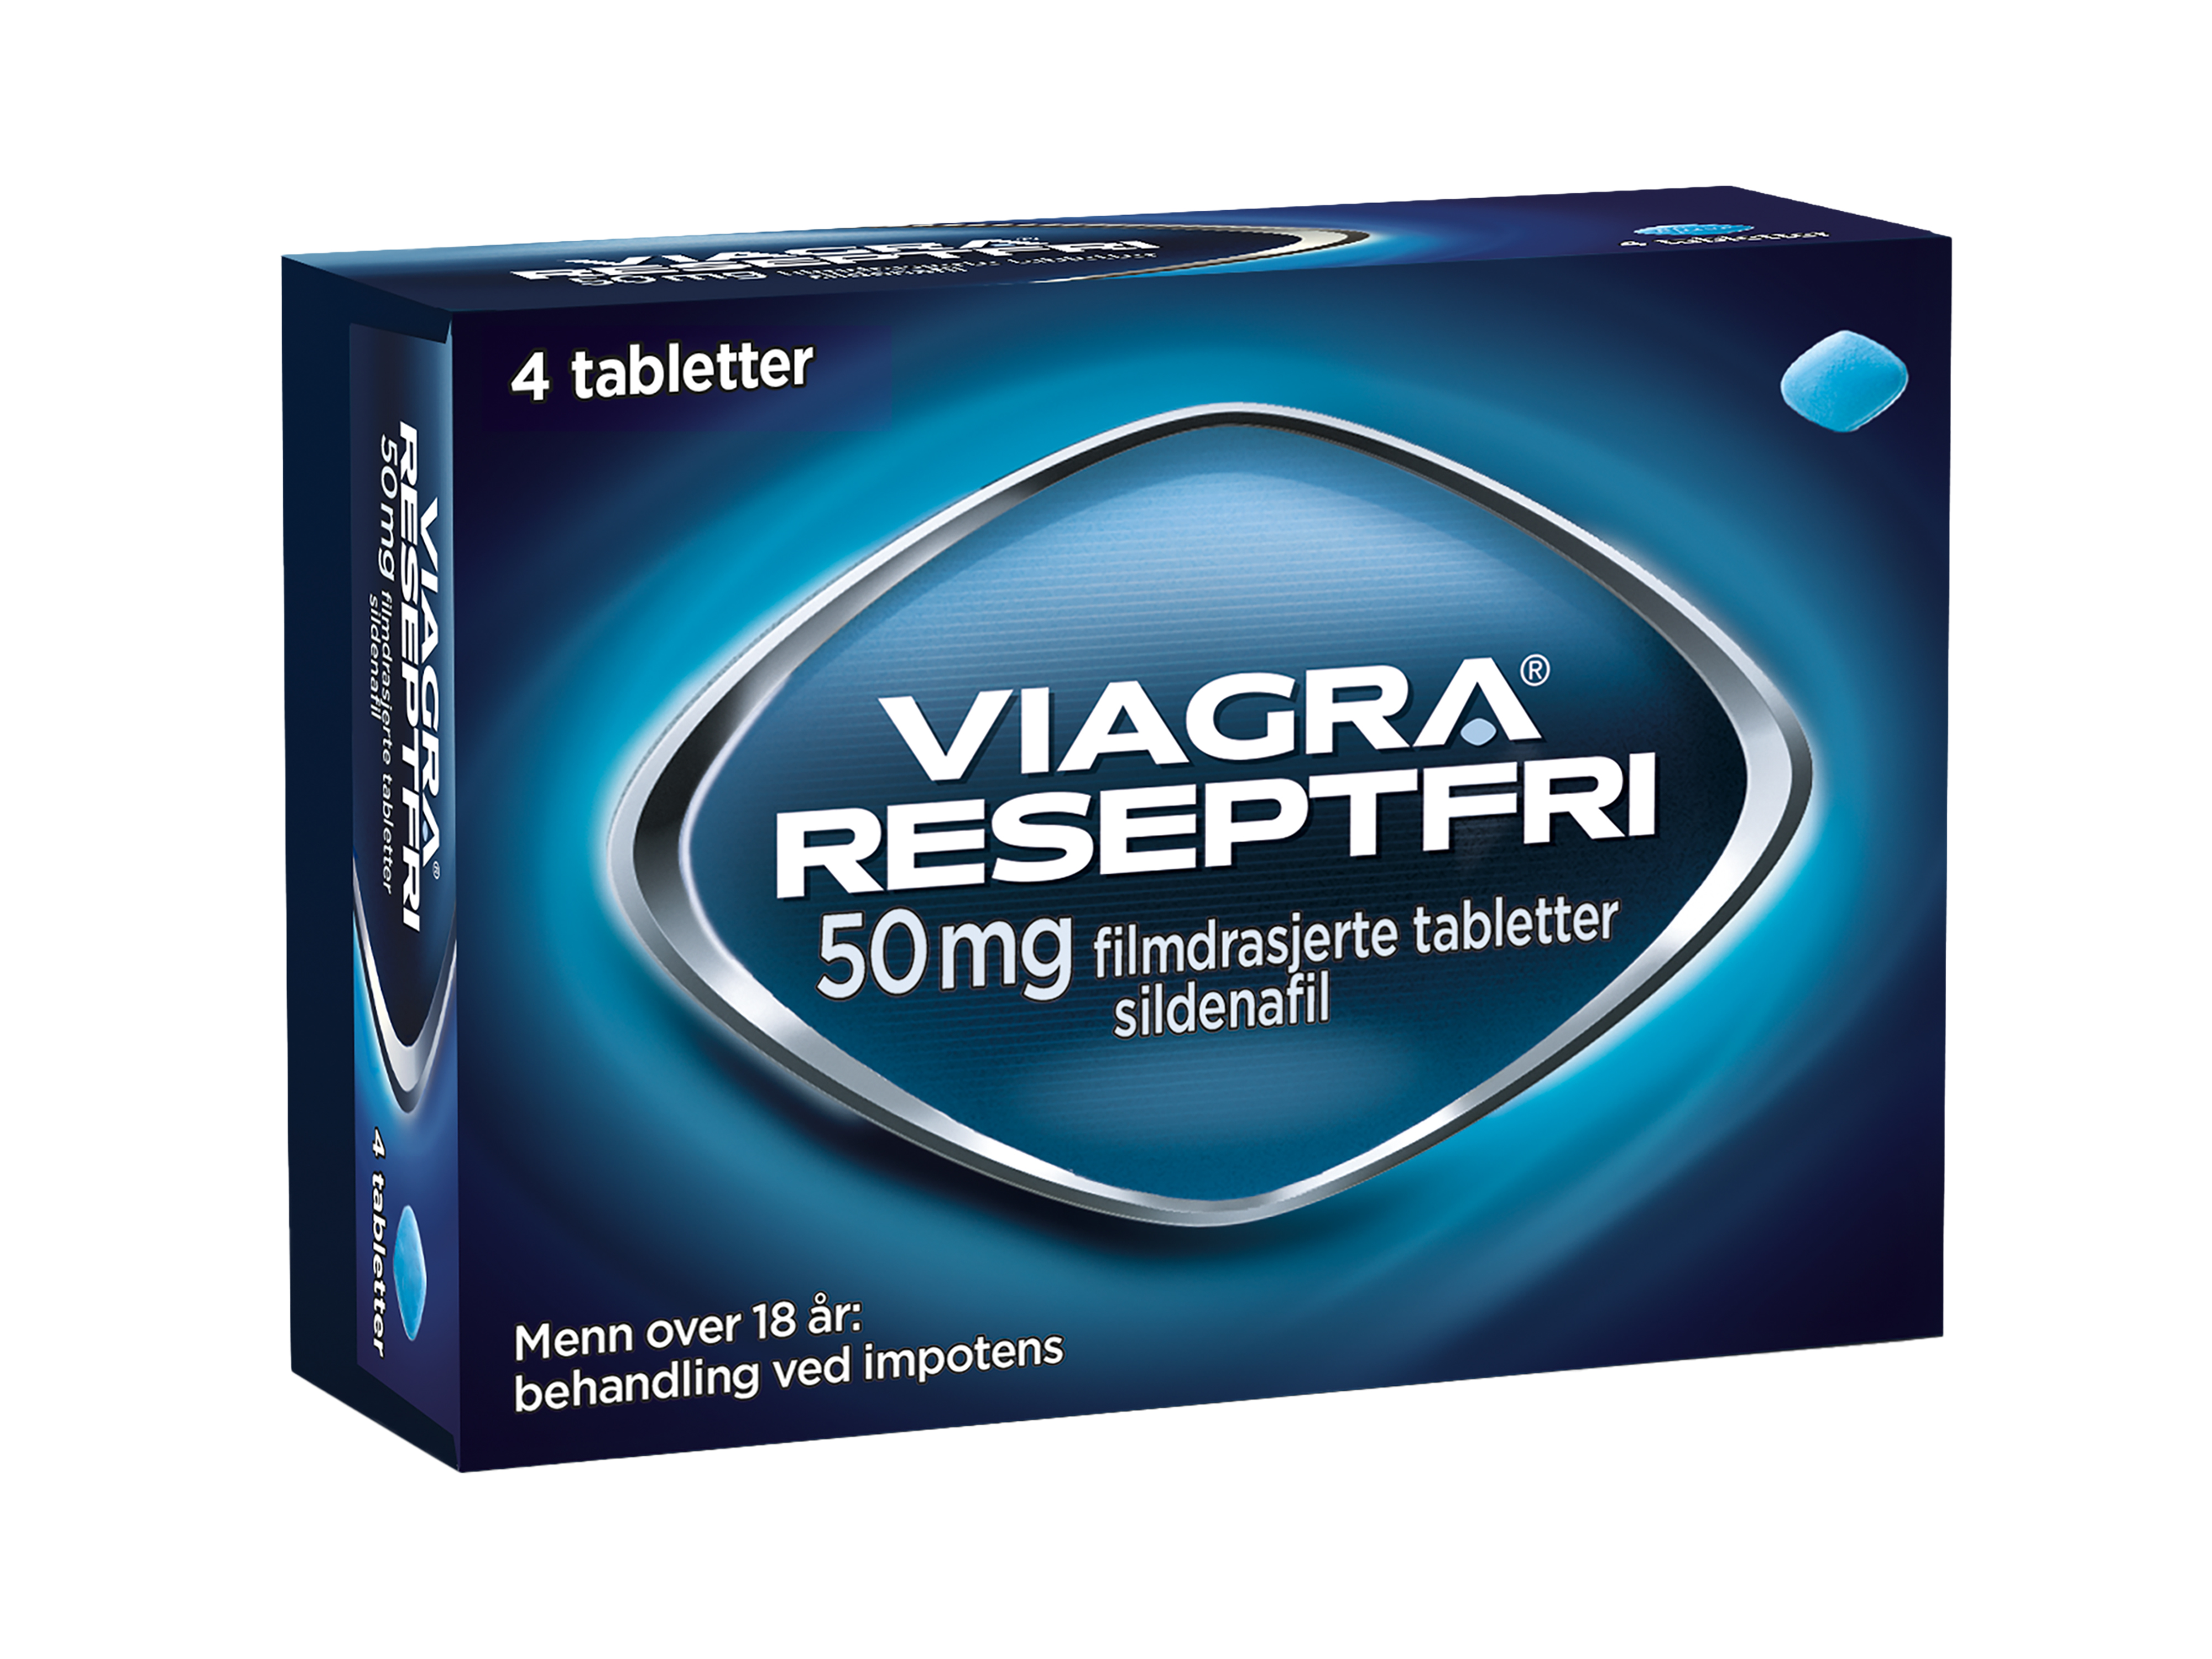 Viagra Reseptfri® Tablett 50mg, 4 stk.